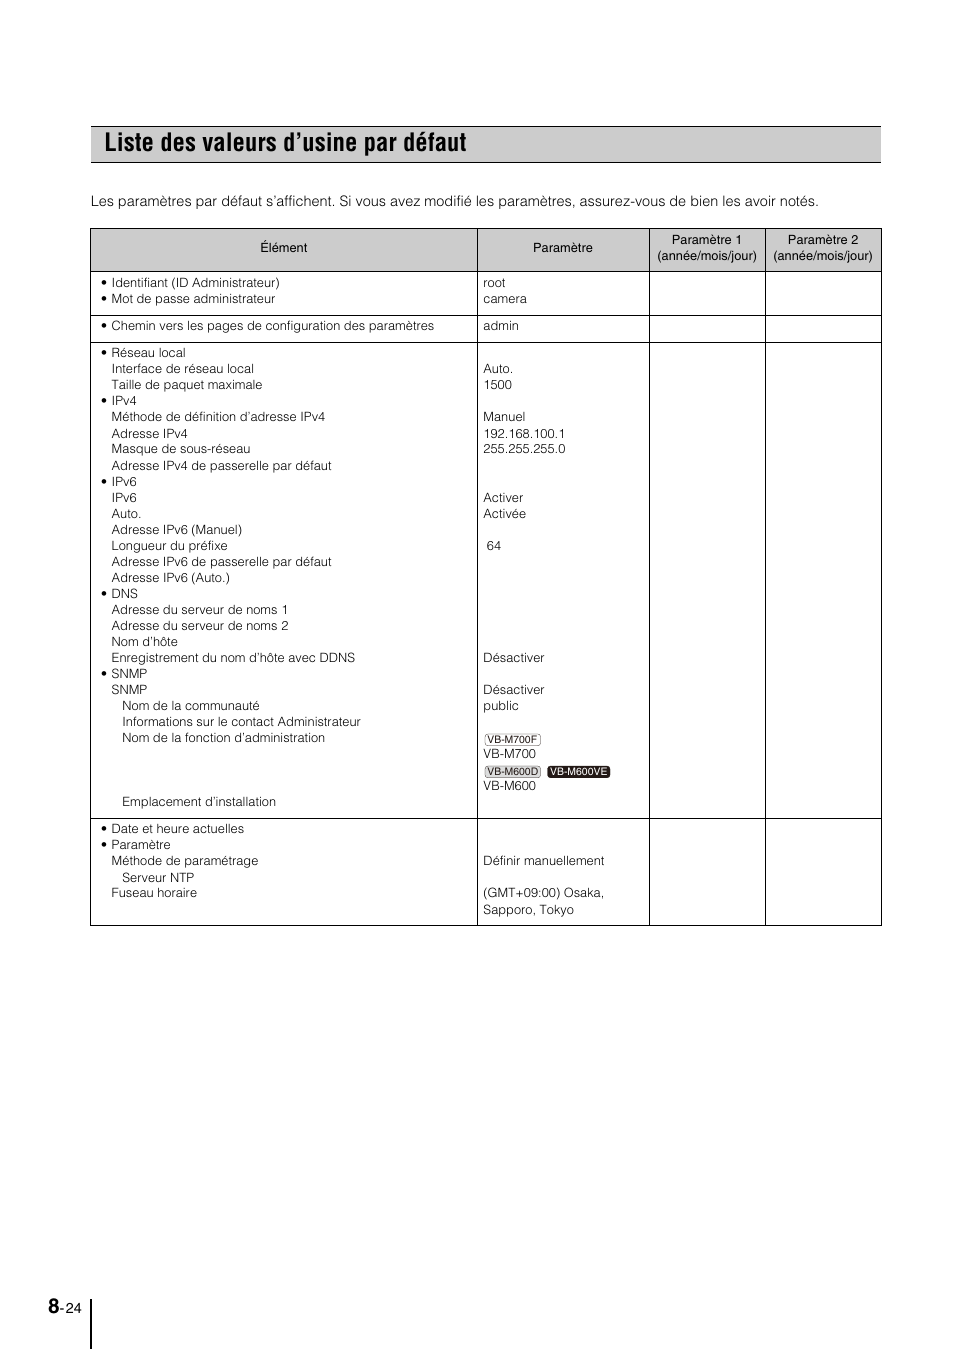 Liste des valeurs d’usine par défaut, Liste des valeurs d’usine par défaut -24 | Canon VB-M600D Manuel d'utilisation | Page 140 / 152